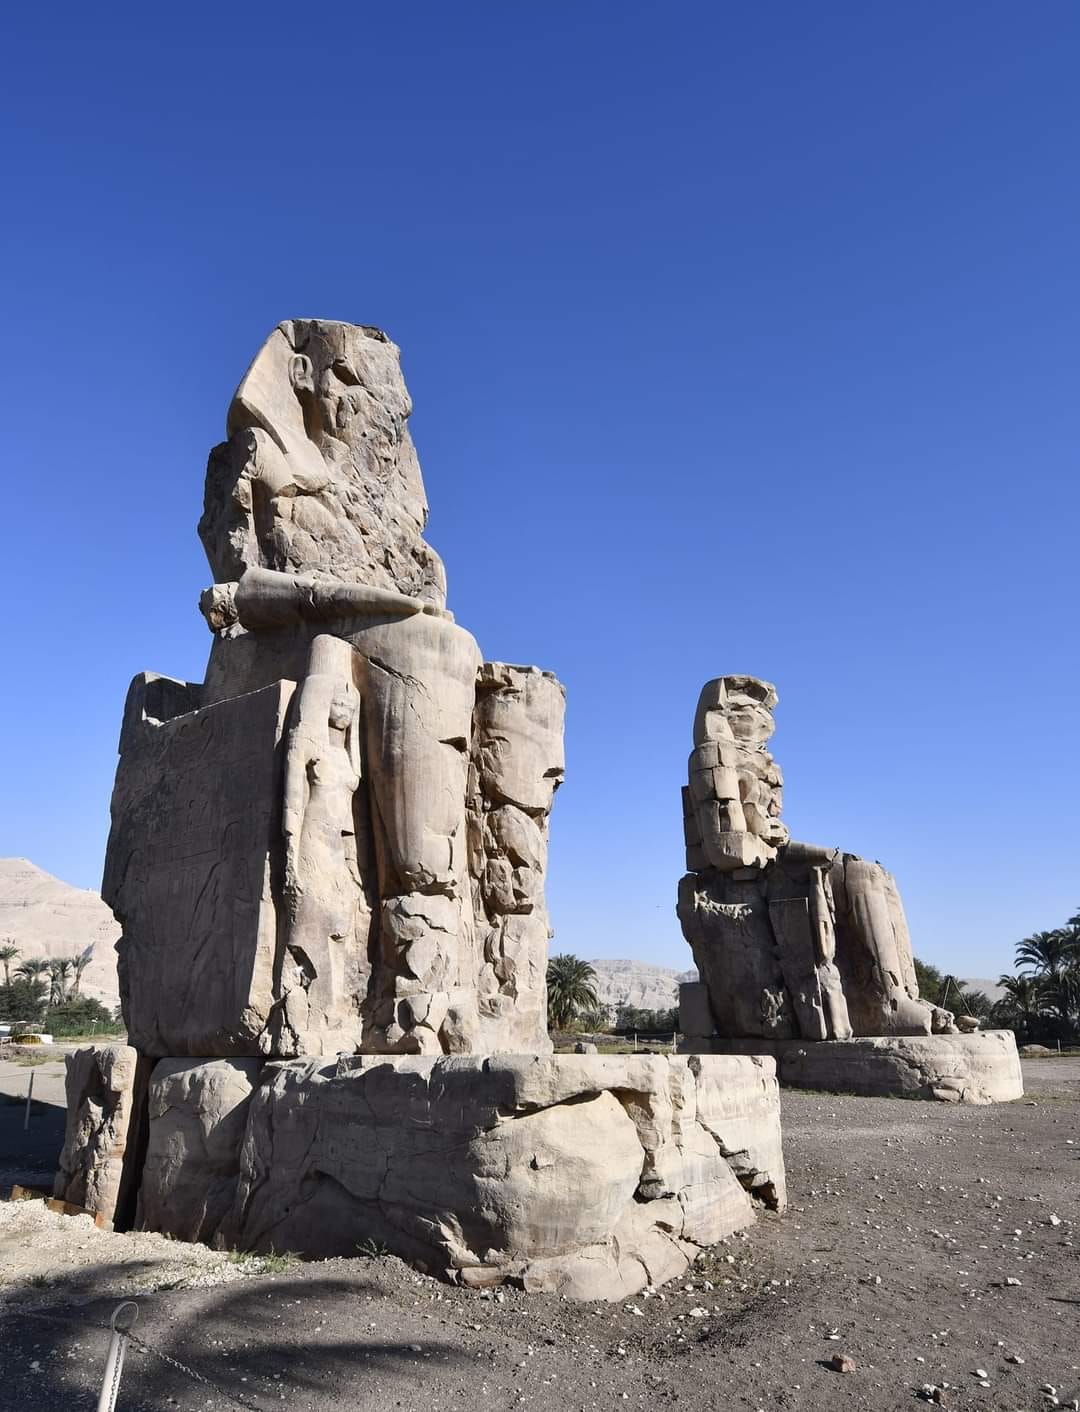 التمثالين بناهما المهندس الفرعونى أمنحتب بن حابو